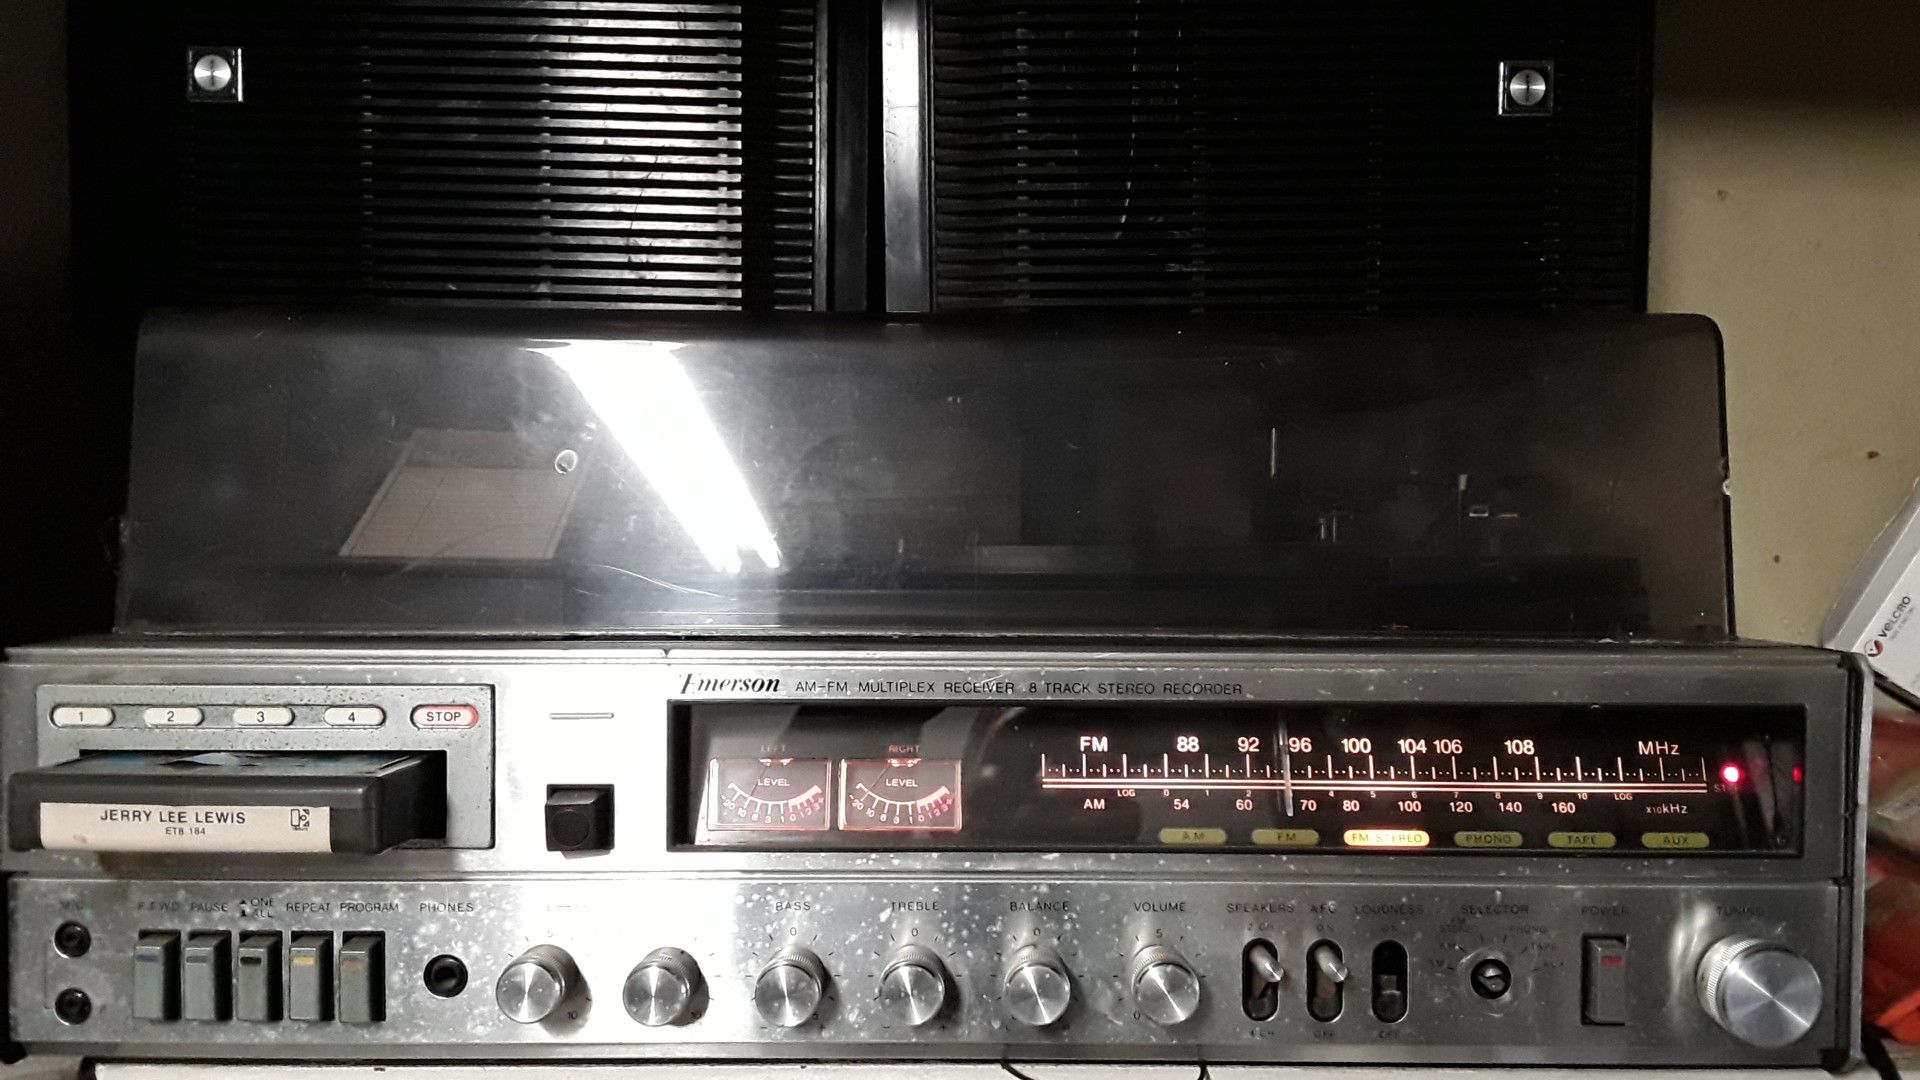 Emerson AM FM multiplex receiver 8 track stereo recorder